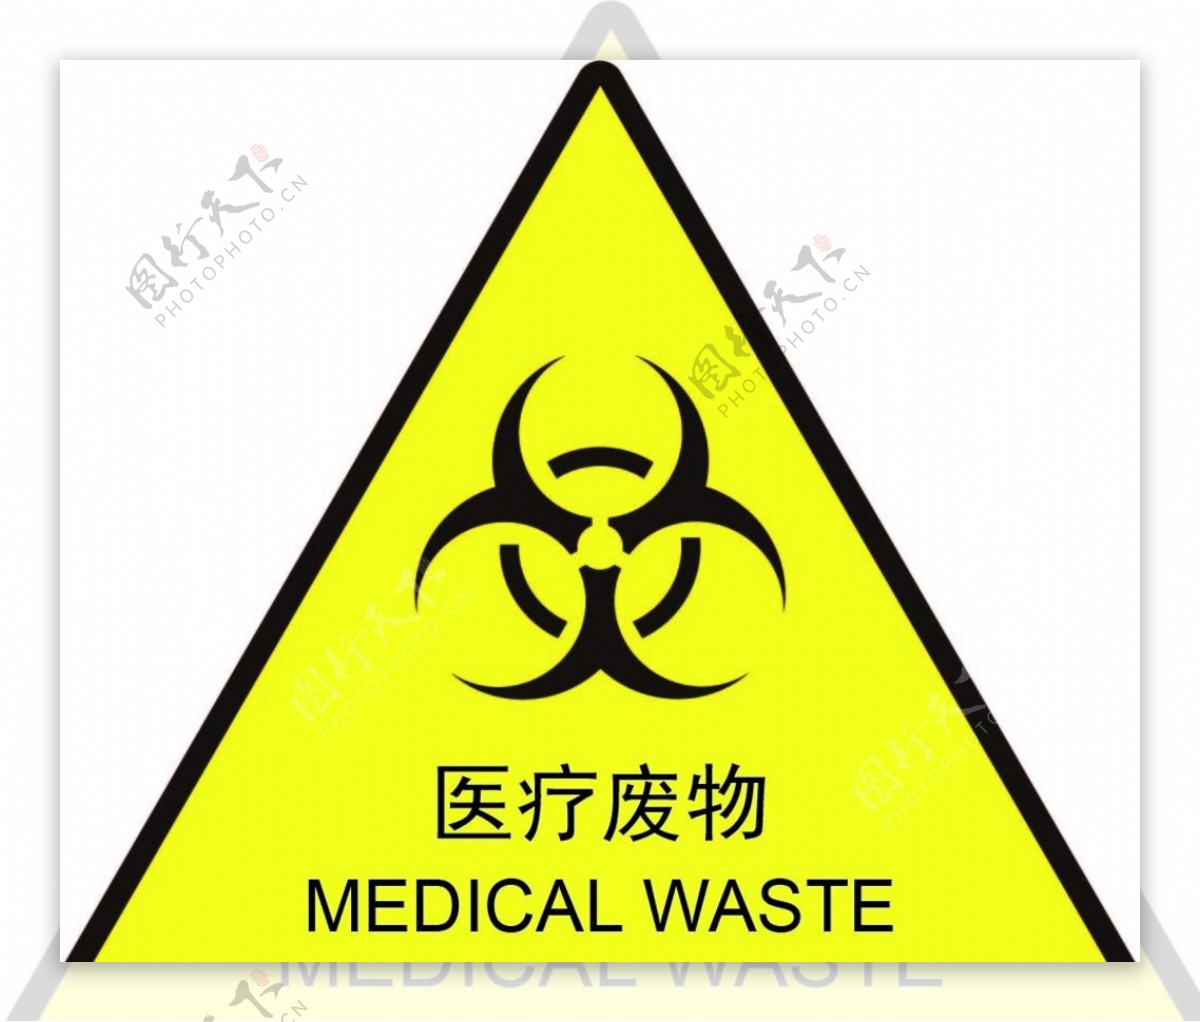 医疗废物logo图片